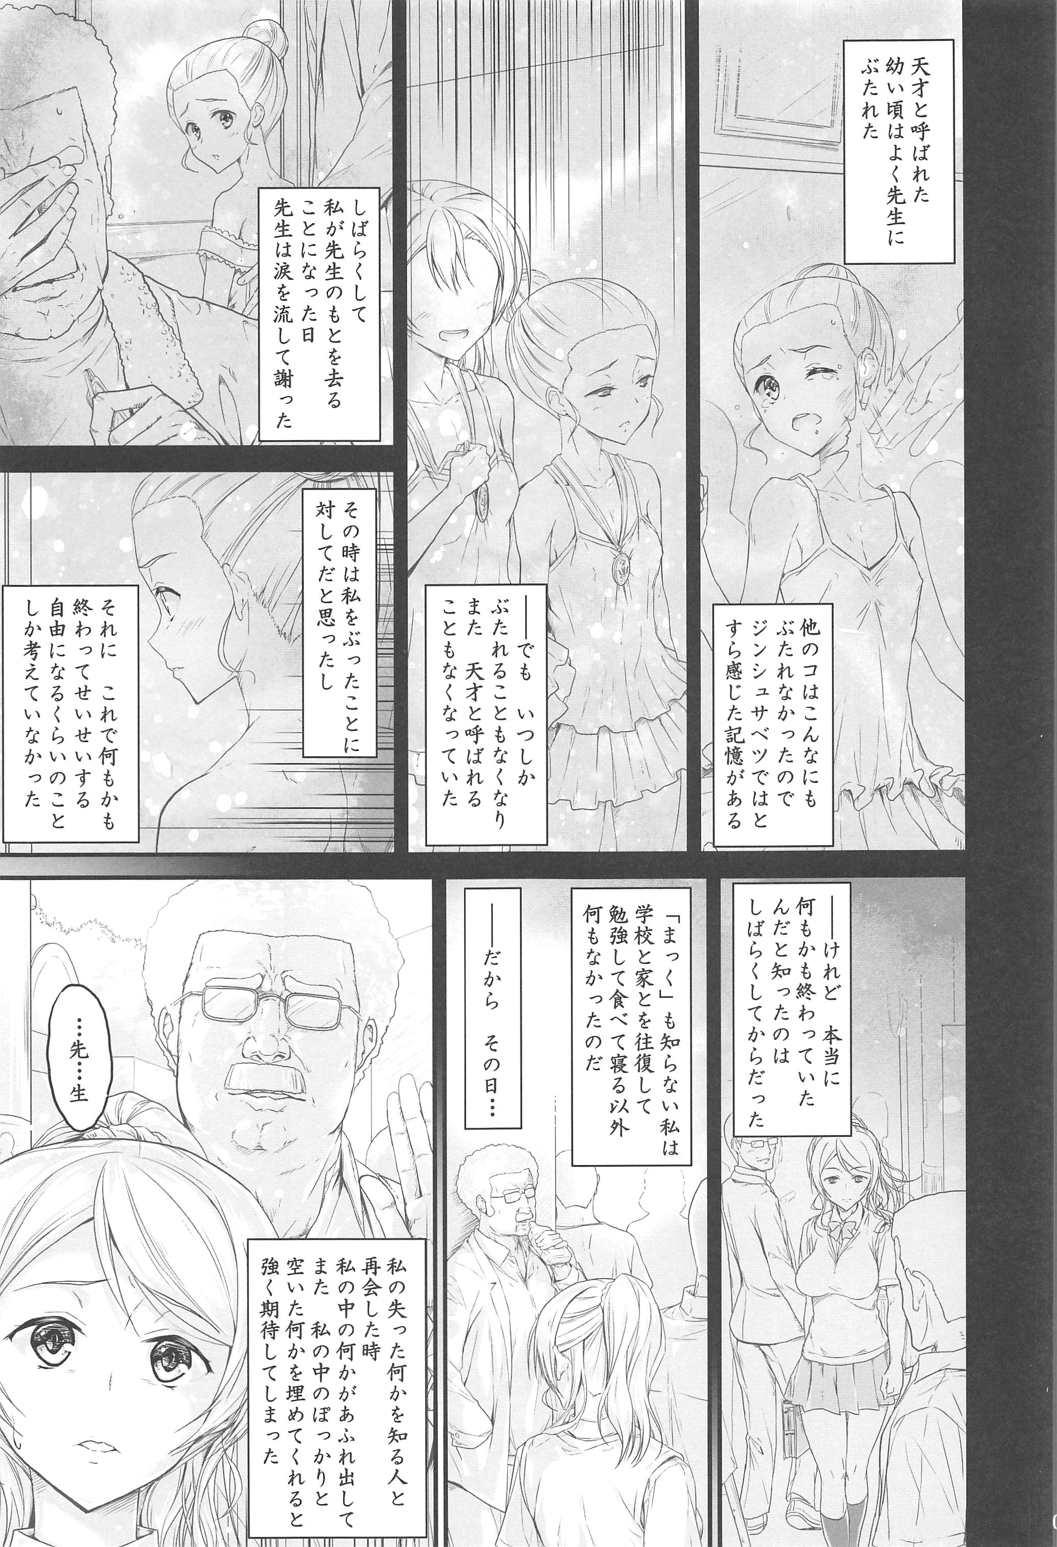 Infiel Kouhensachi no Yuutousei de Jiki Seito Kaichou Saiyuuryoku Kouho no Ninen Erichika - Love live Threeway - Page 3